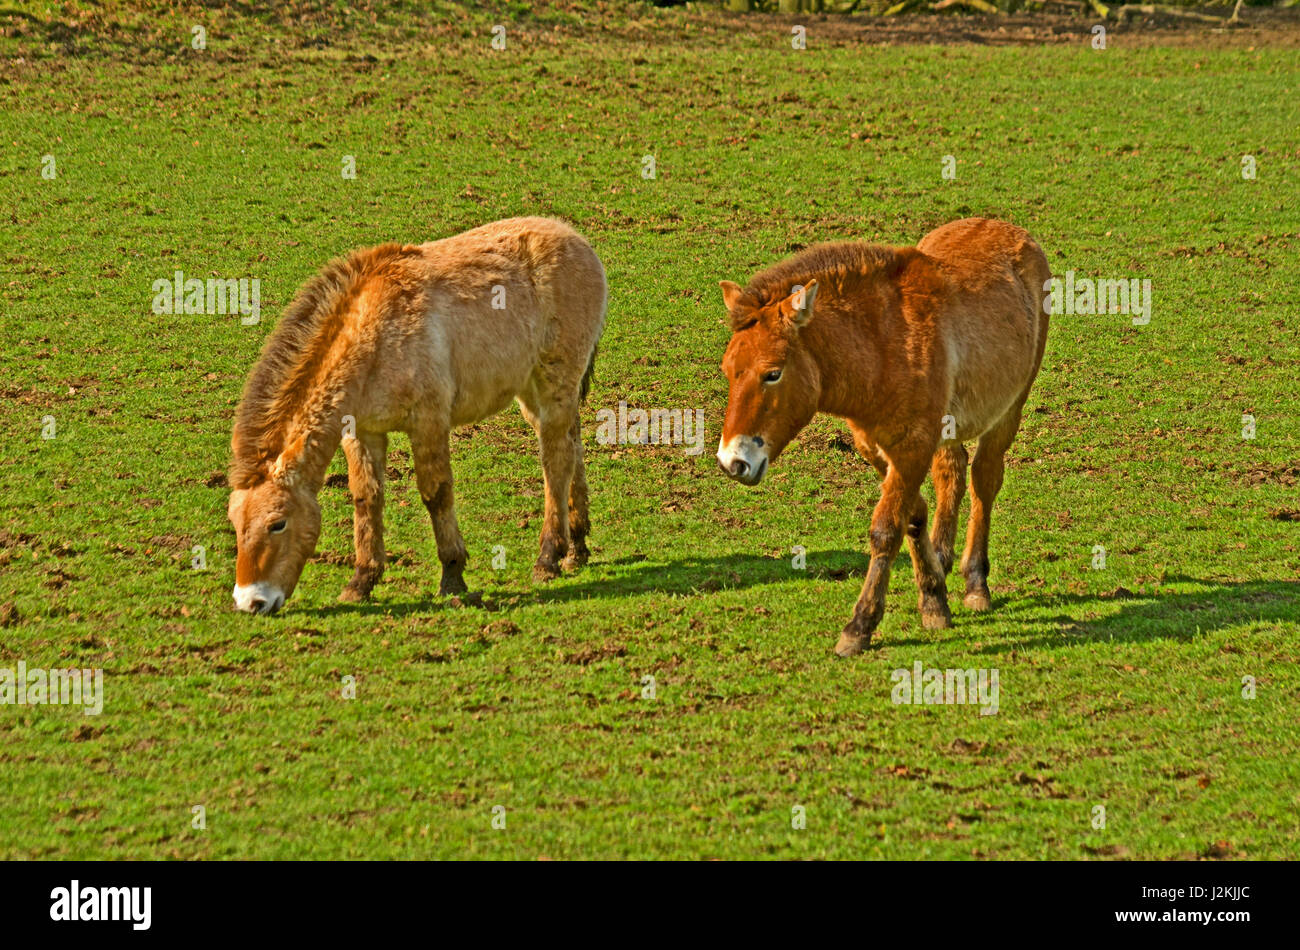 Onager, Equus Africanus, North Africa Captive Stock Photo